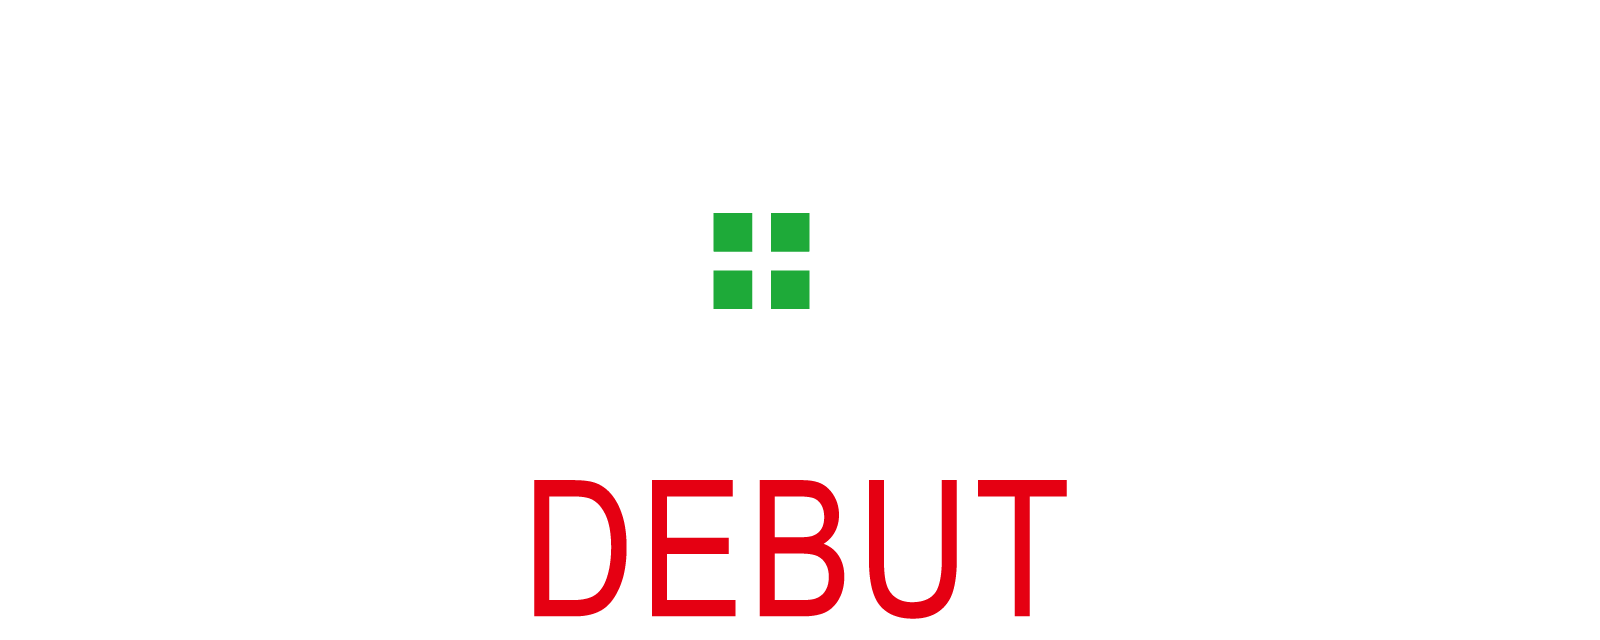 サポートジャケットBb＋FIT SLIM/WIDE |ユーピーアール株式会社